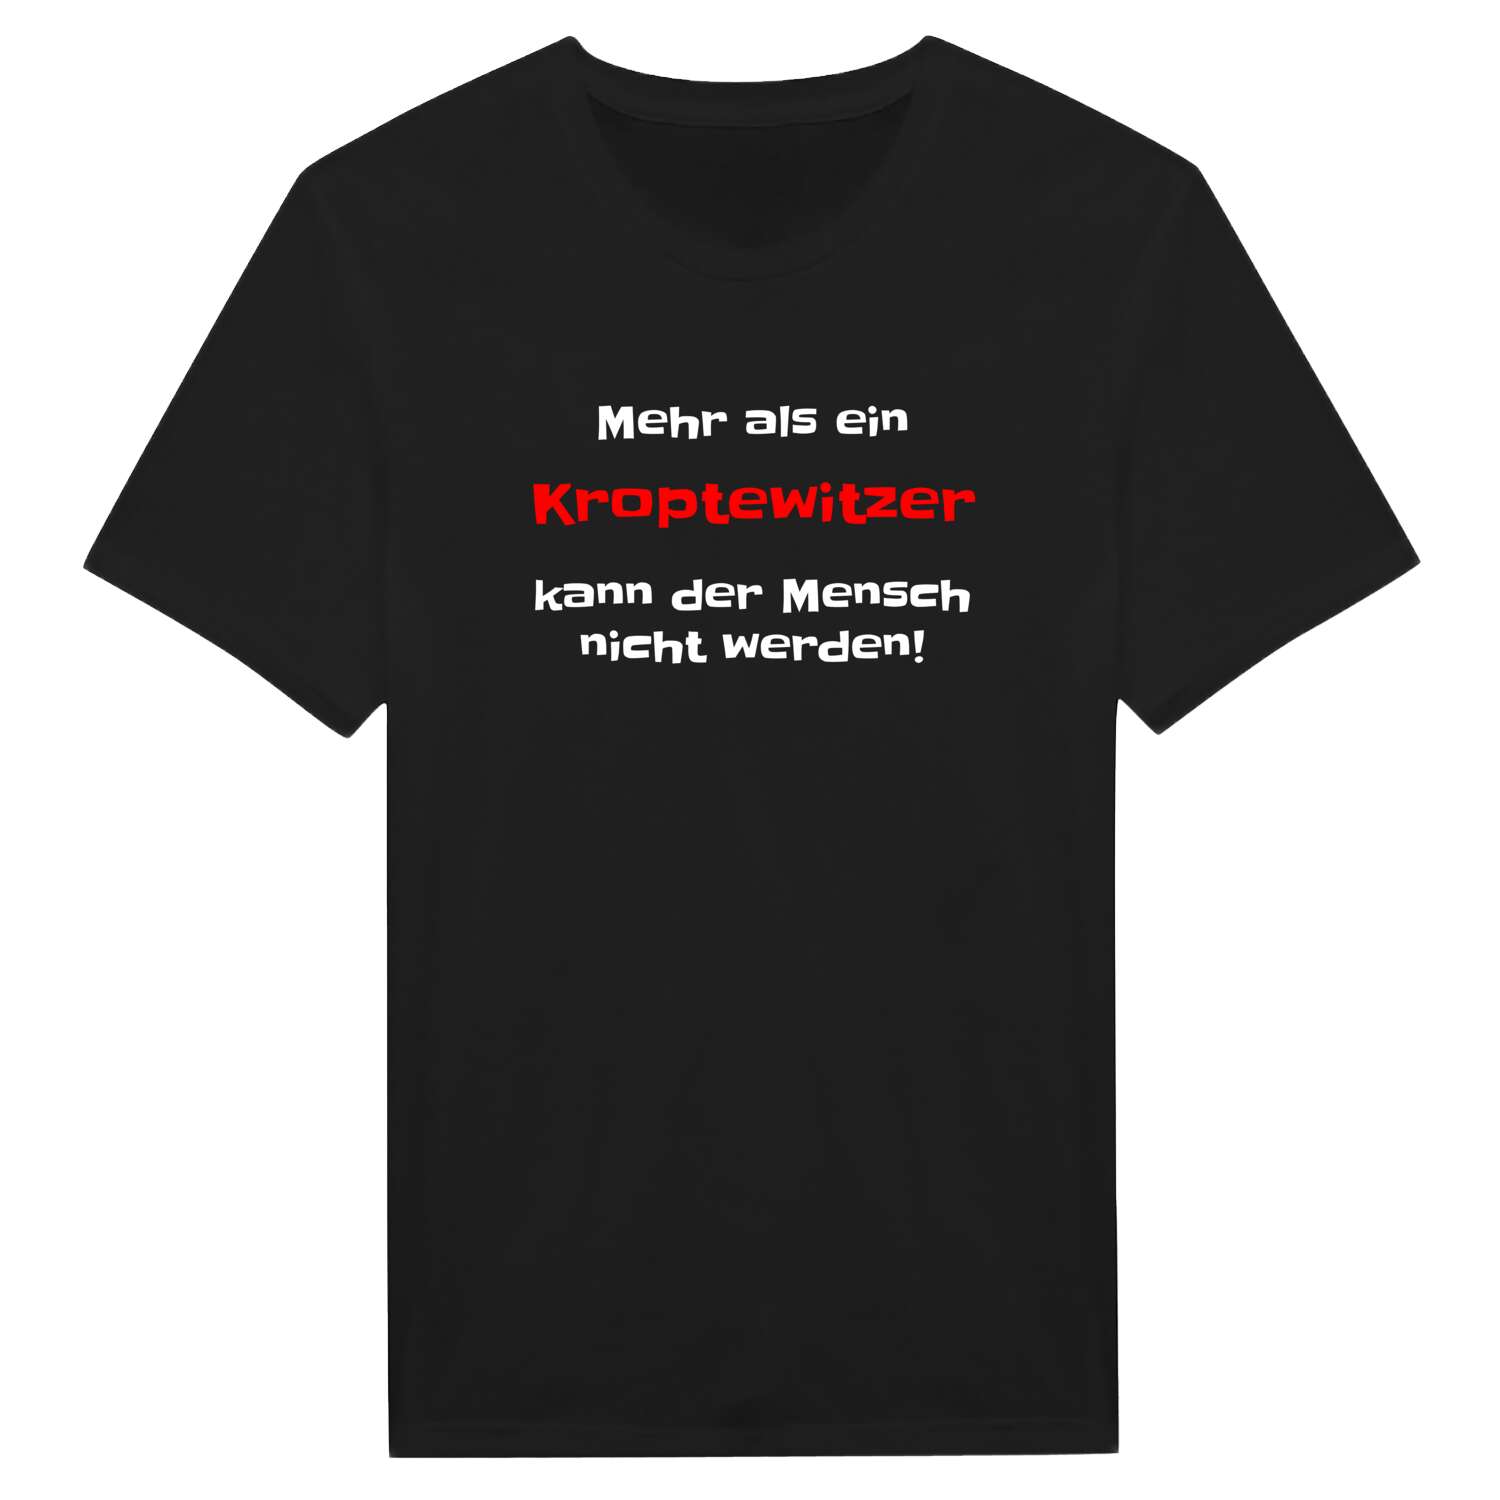 Kroptewitz T-Shirt »Mehr als ein«